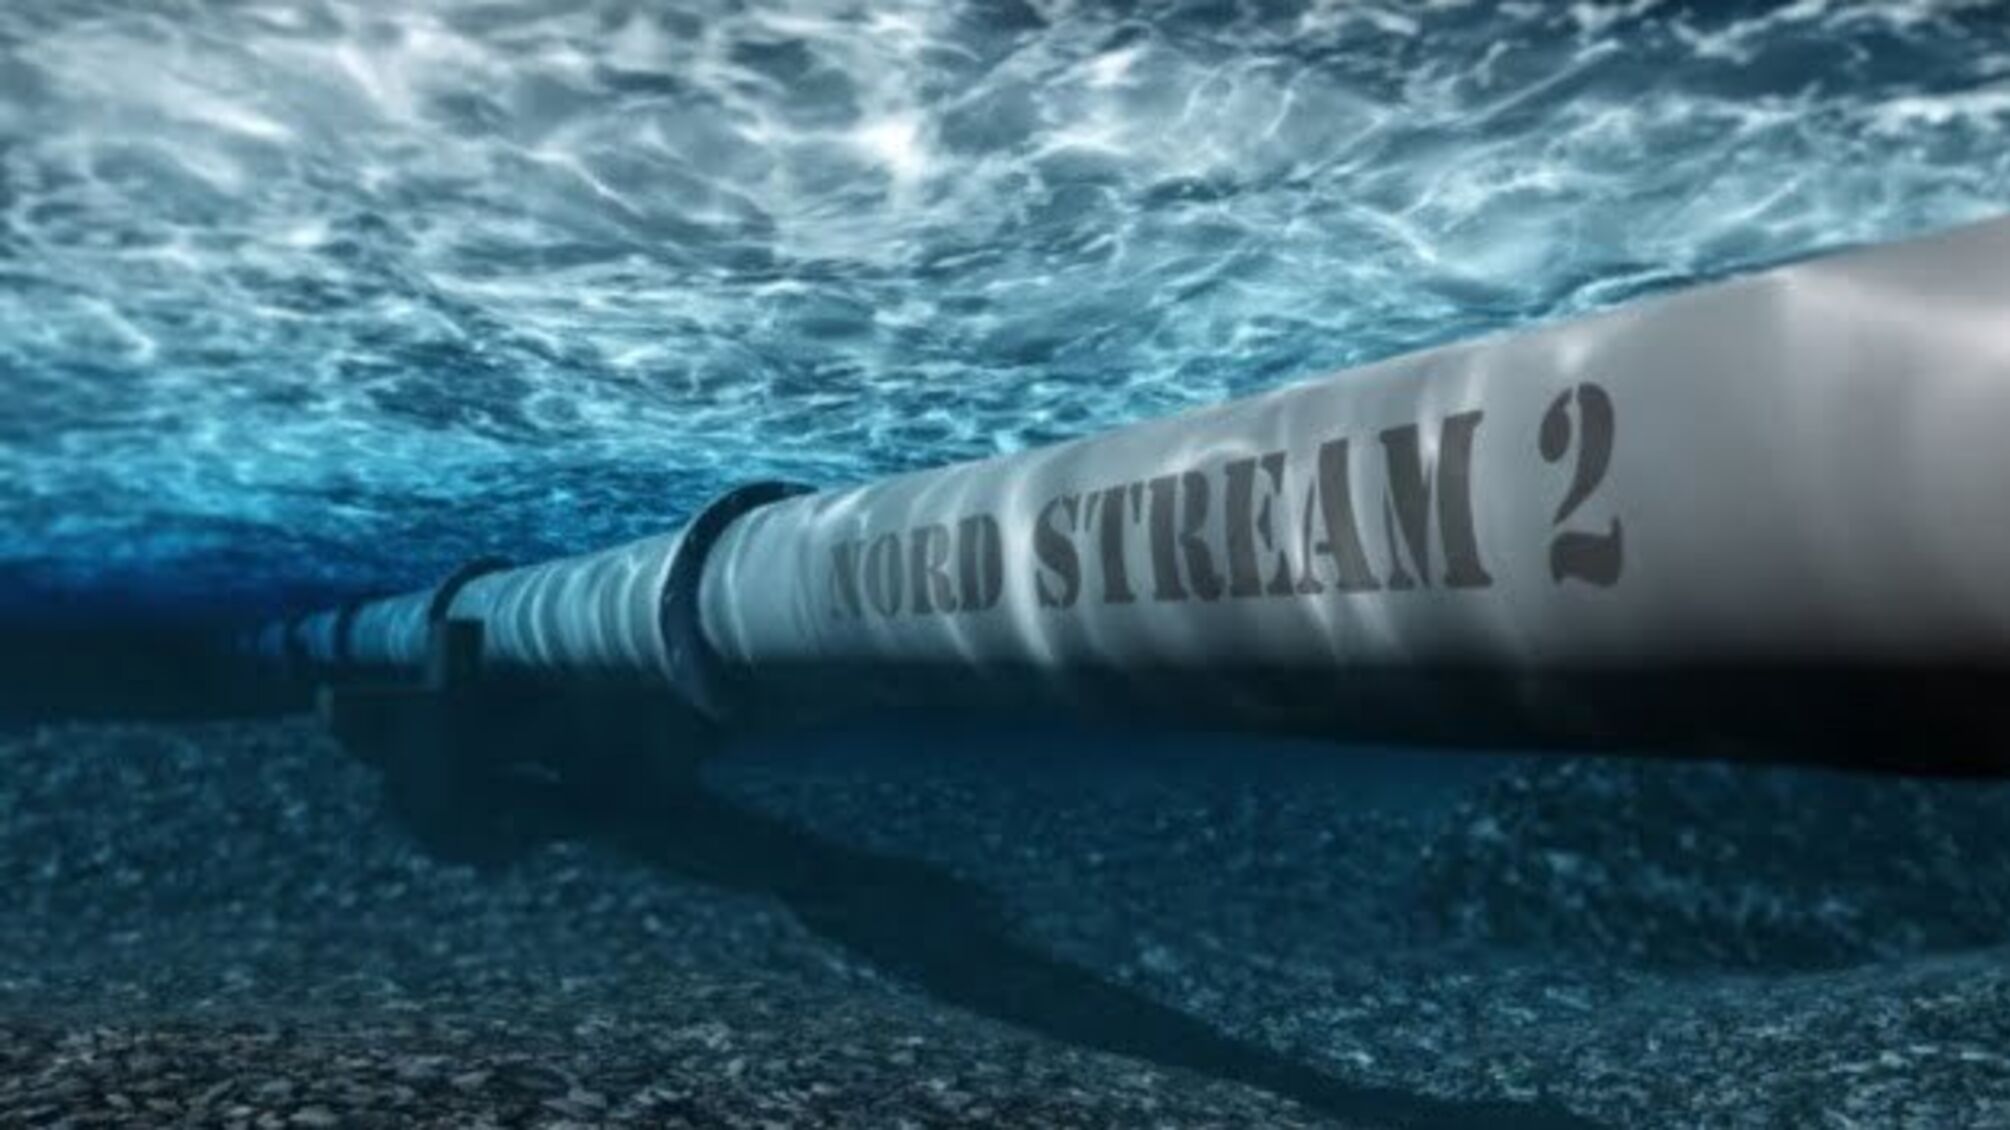 Німецькі екологи хочуть через суд скасувати дозвіл на будівництво Nord Stream 2